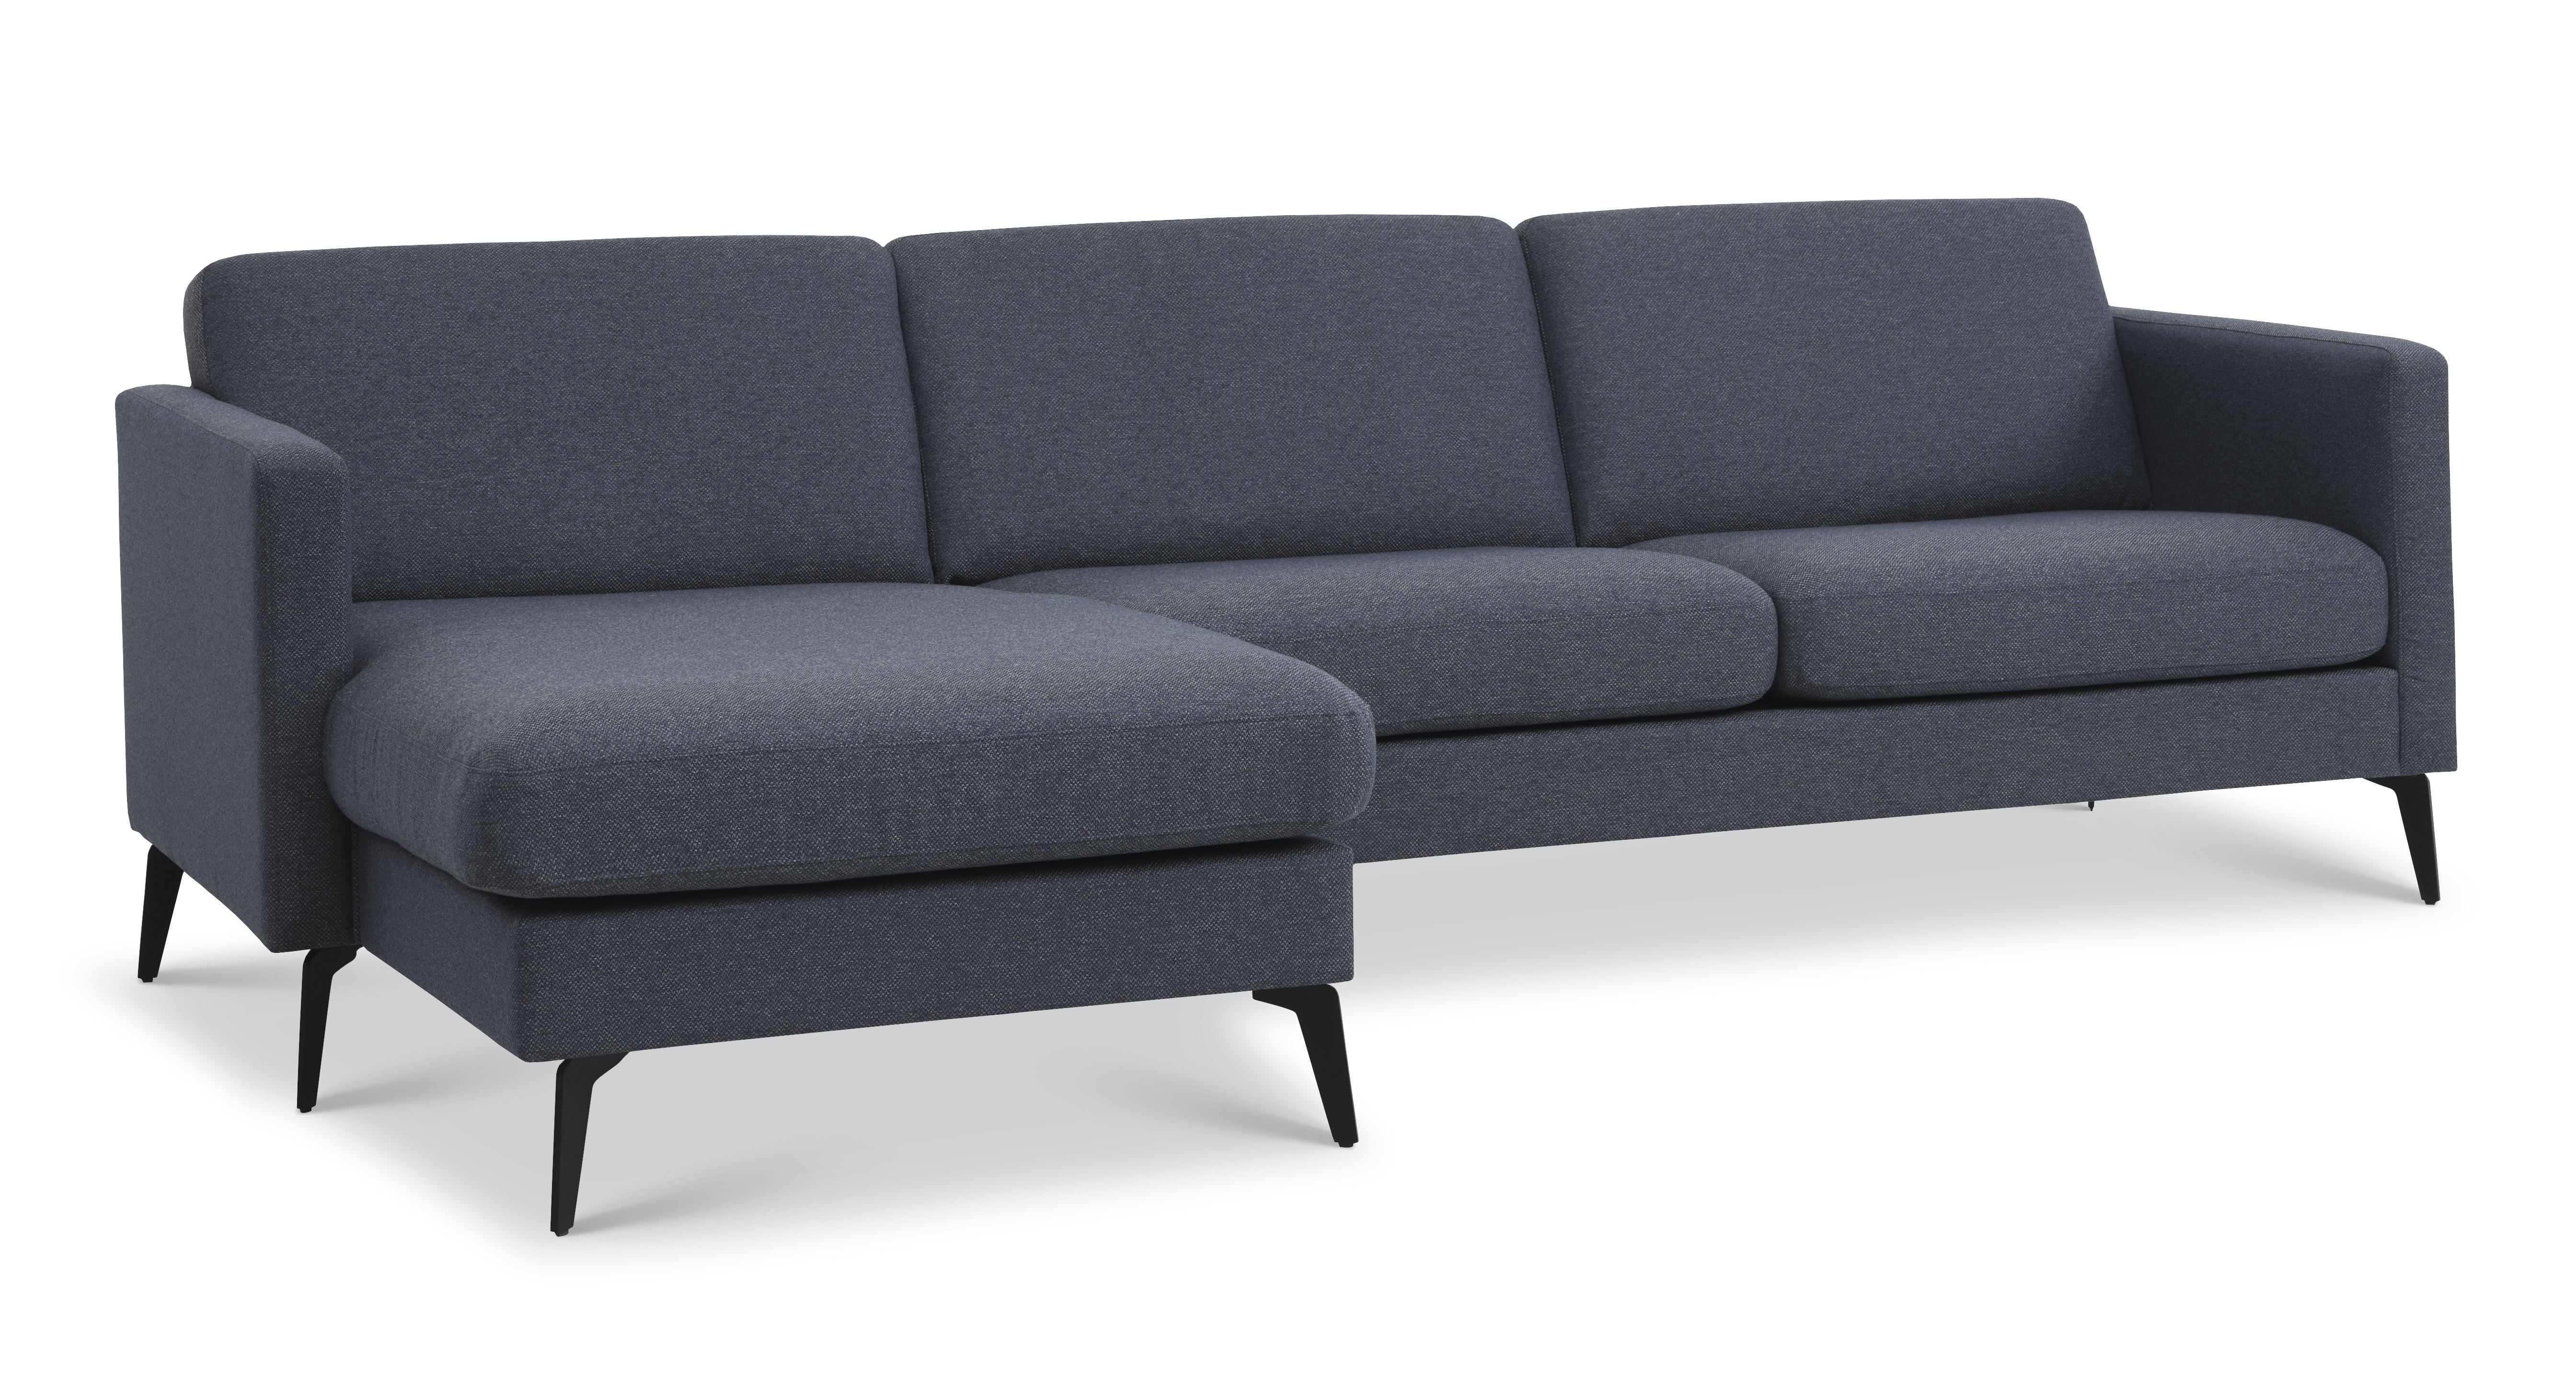 Ask sæt 51 3D sofa, m. chaiselong - navy blå polyester stof og Eiffel ben